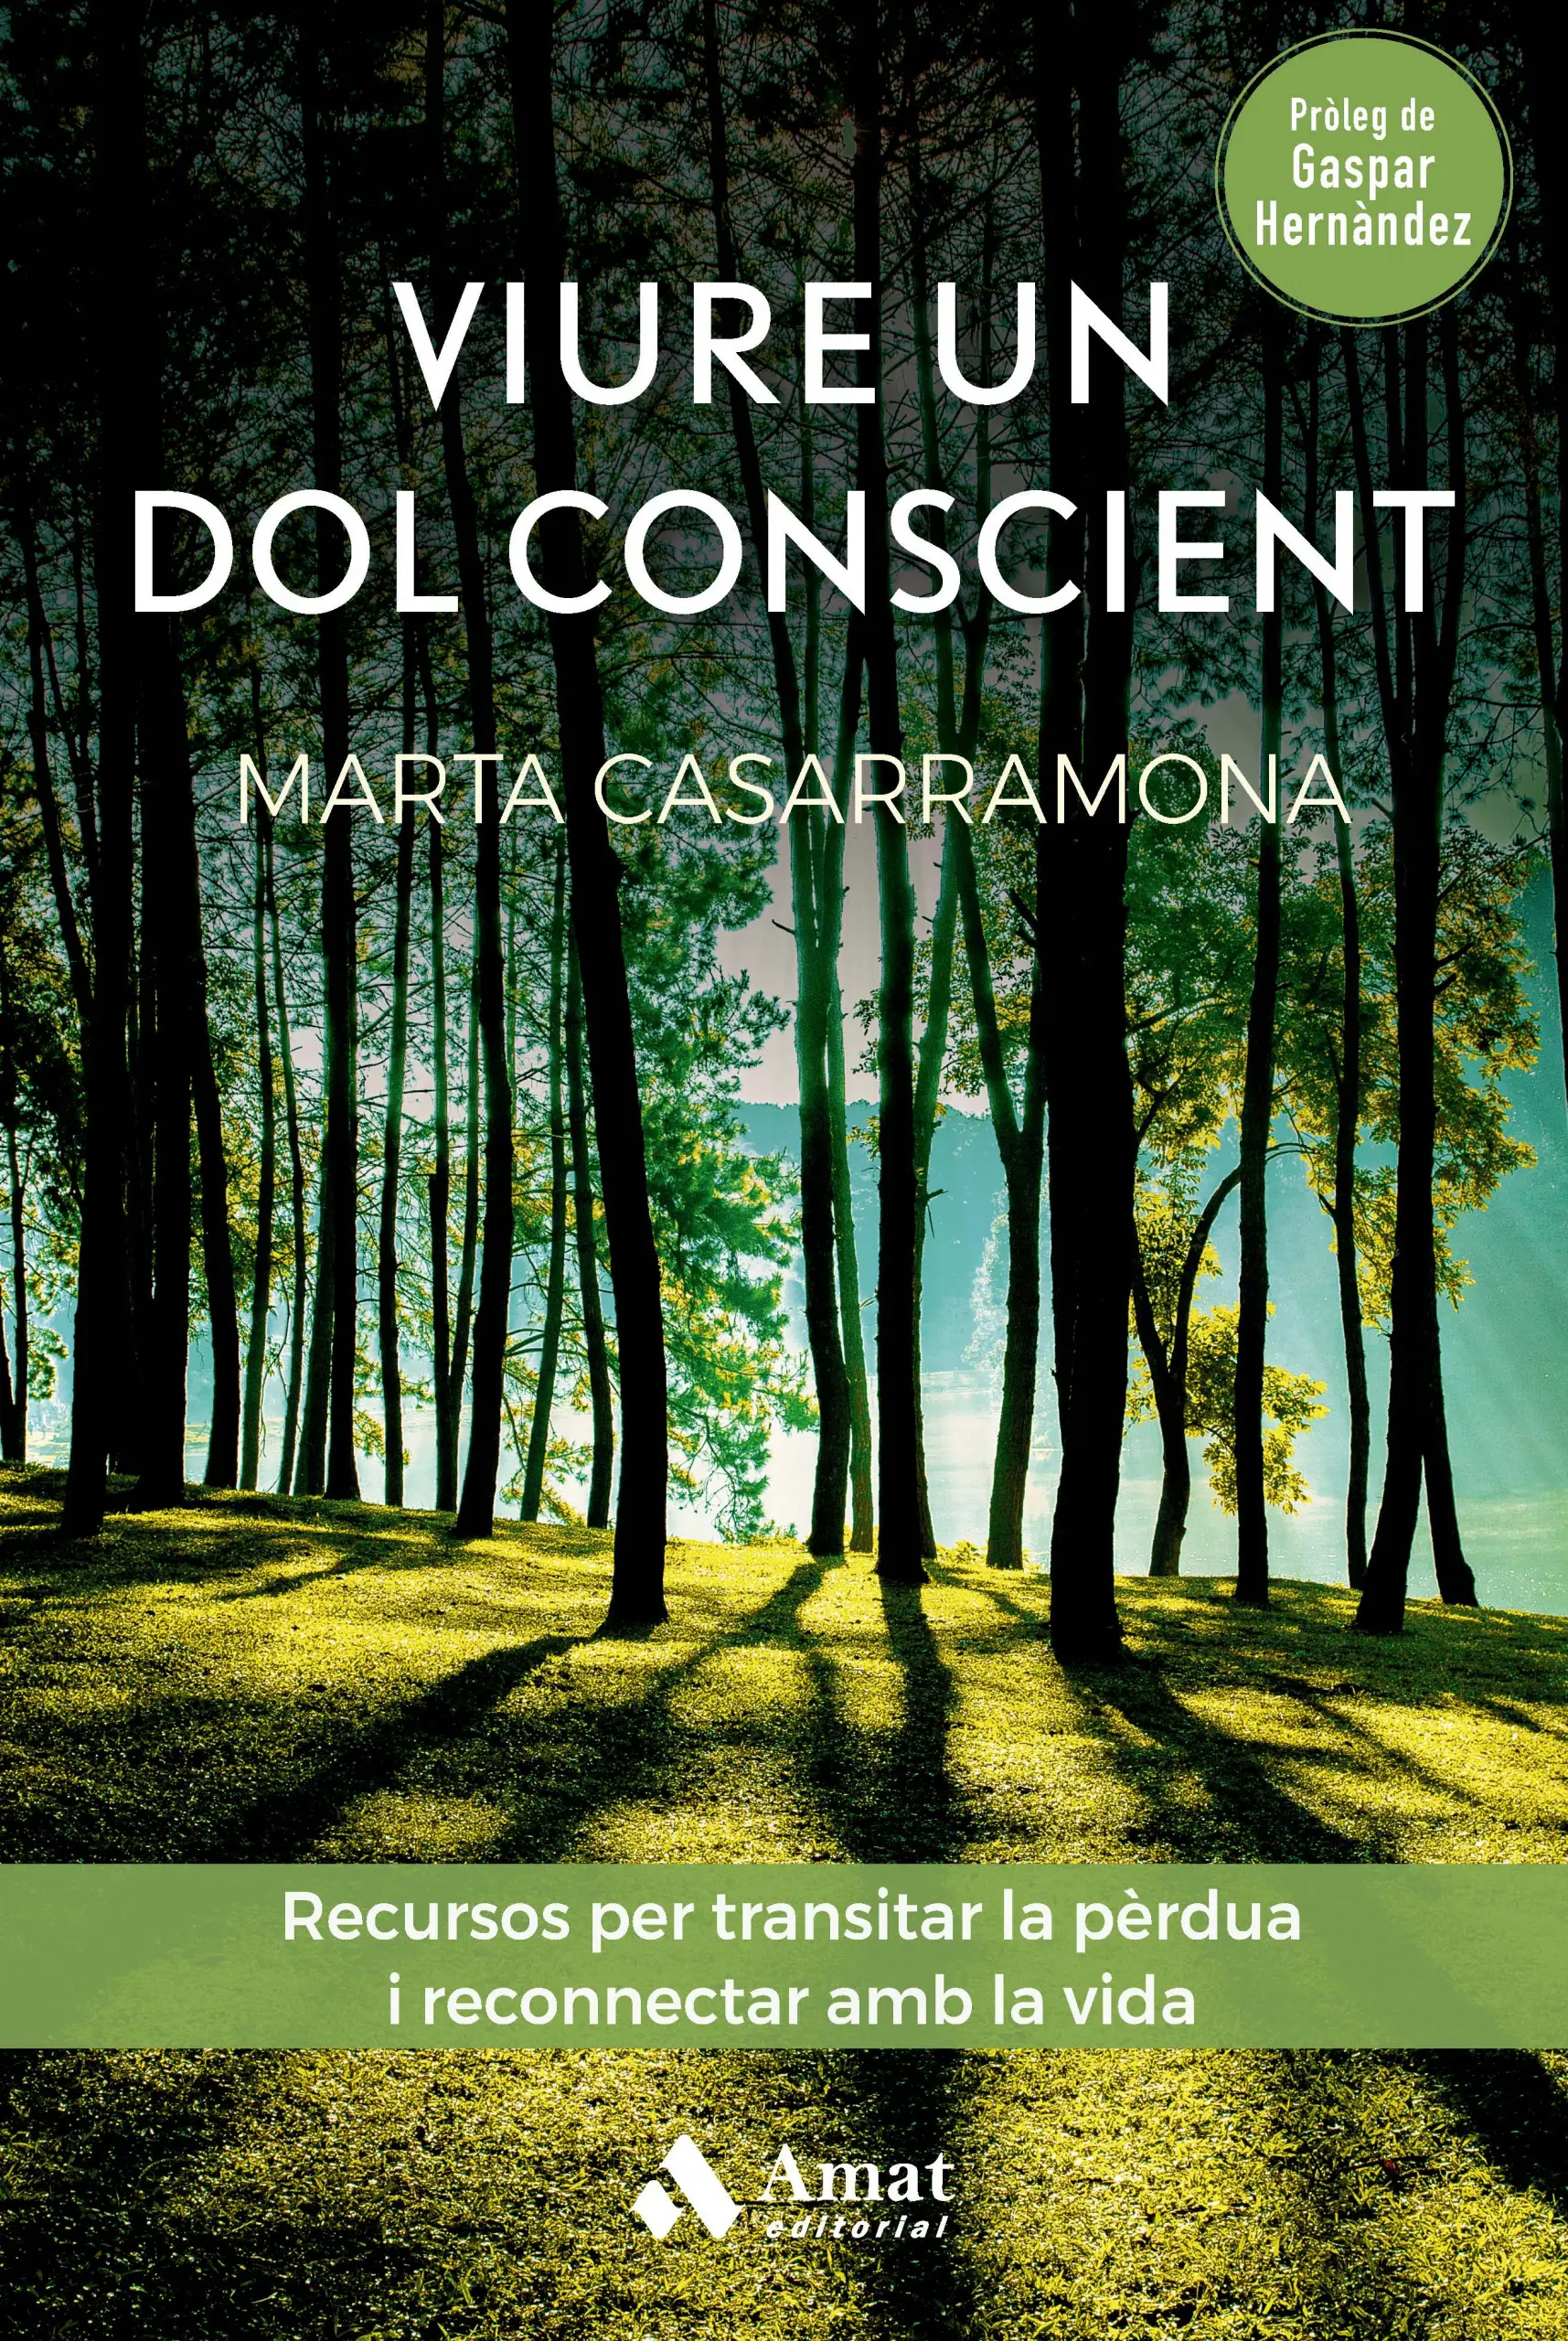 Viure un dol conscient | Marta Casarramona | Libros para vivir mejor